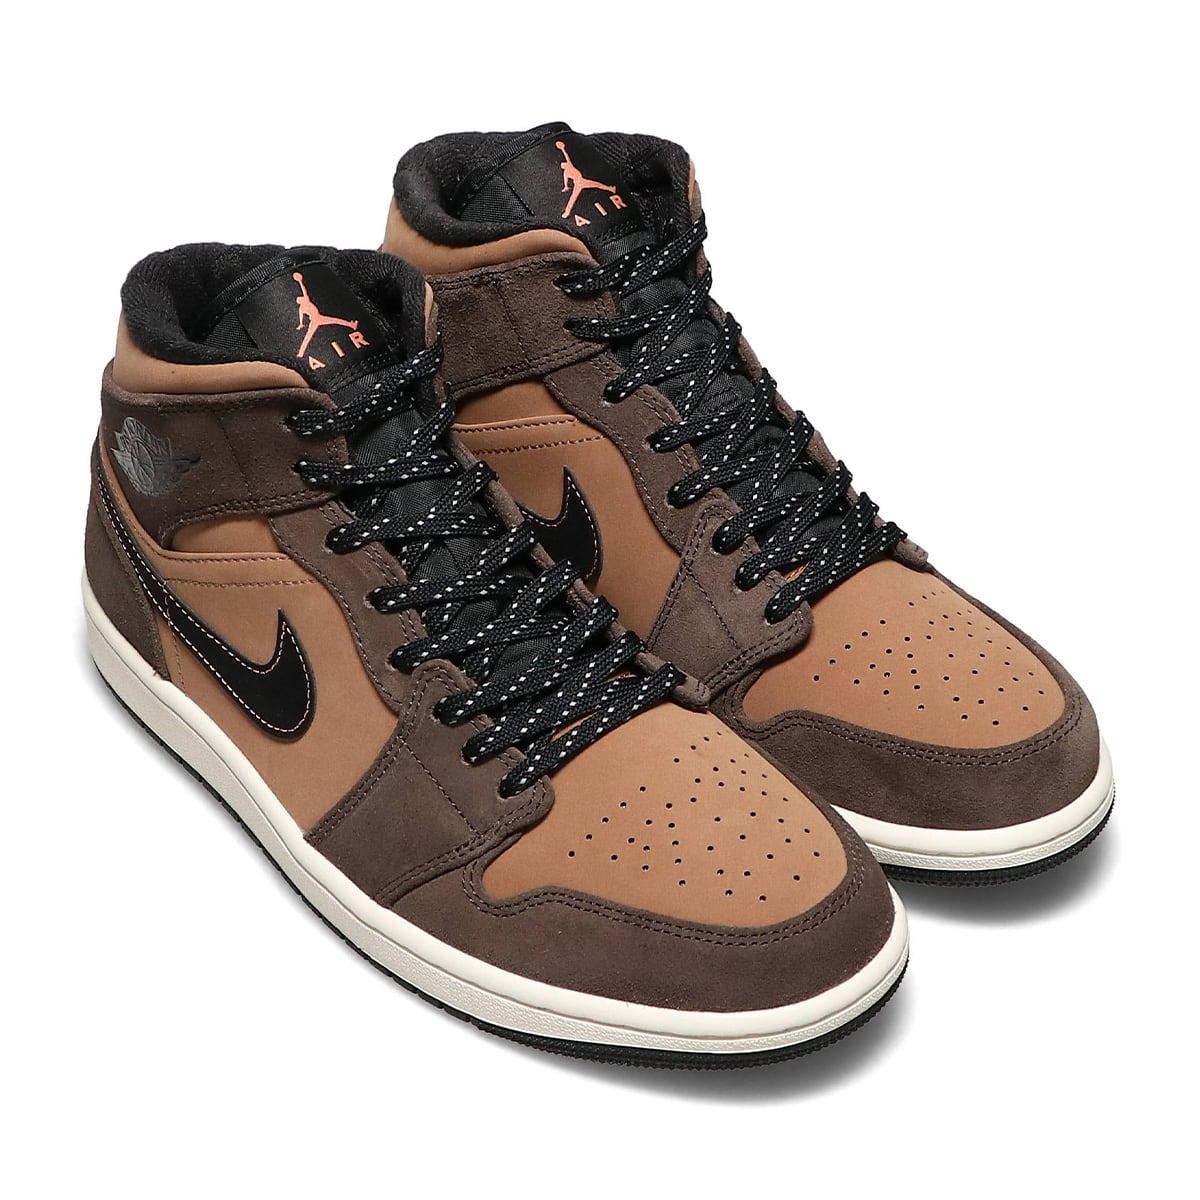 Nike Air Jordan 1 MID SE "Brown" 27.5cm